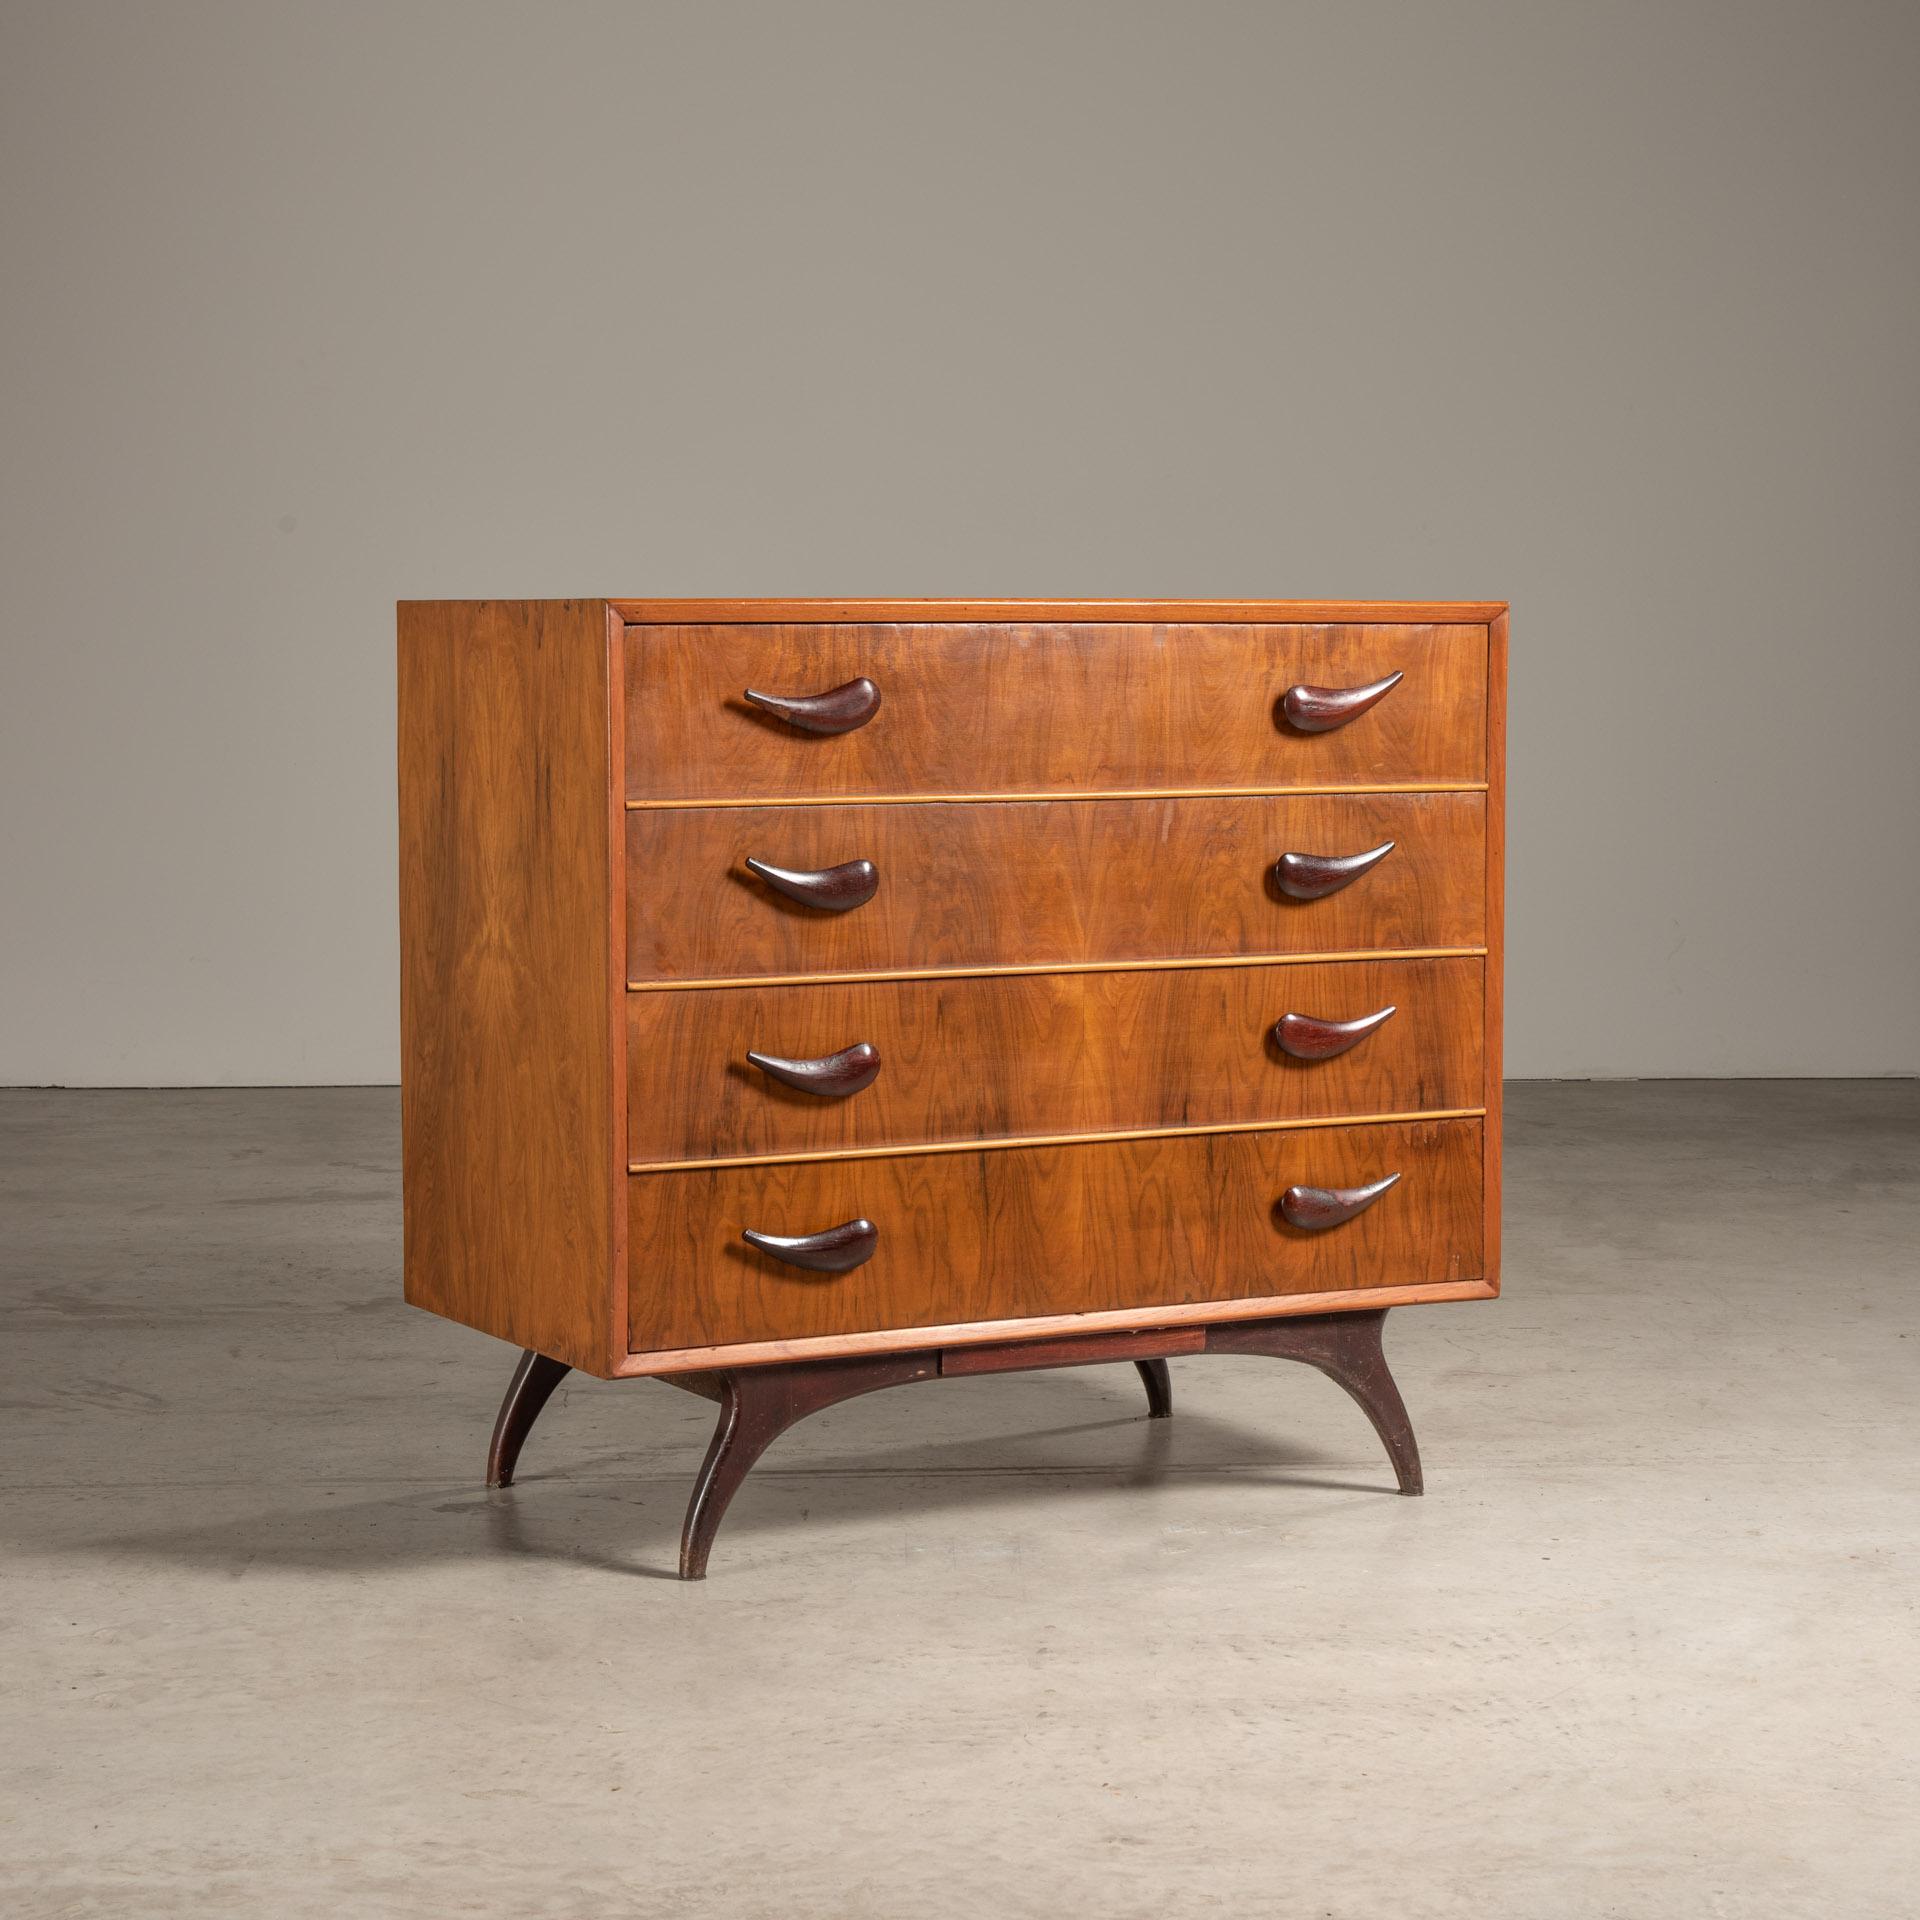 Cette commode est un exemple classique de mobilier brésilien du milieu du XXe siècle, fabriqué par Móveis Cimo. Cette pièce incarne l'esthétique de l'époque avec ses lignes épurées, l'utilisation de bois chauds et son design fonctionnel. 

Cette